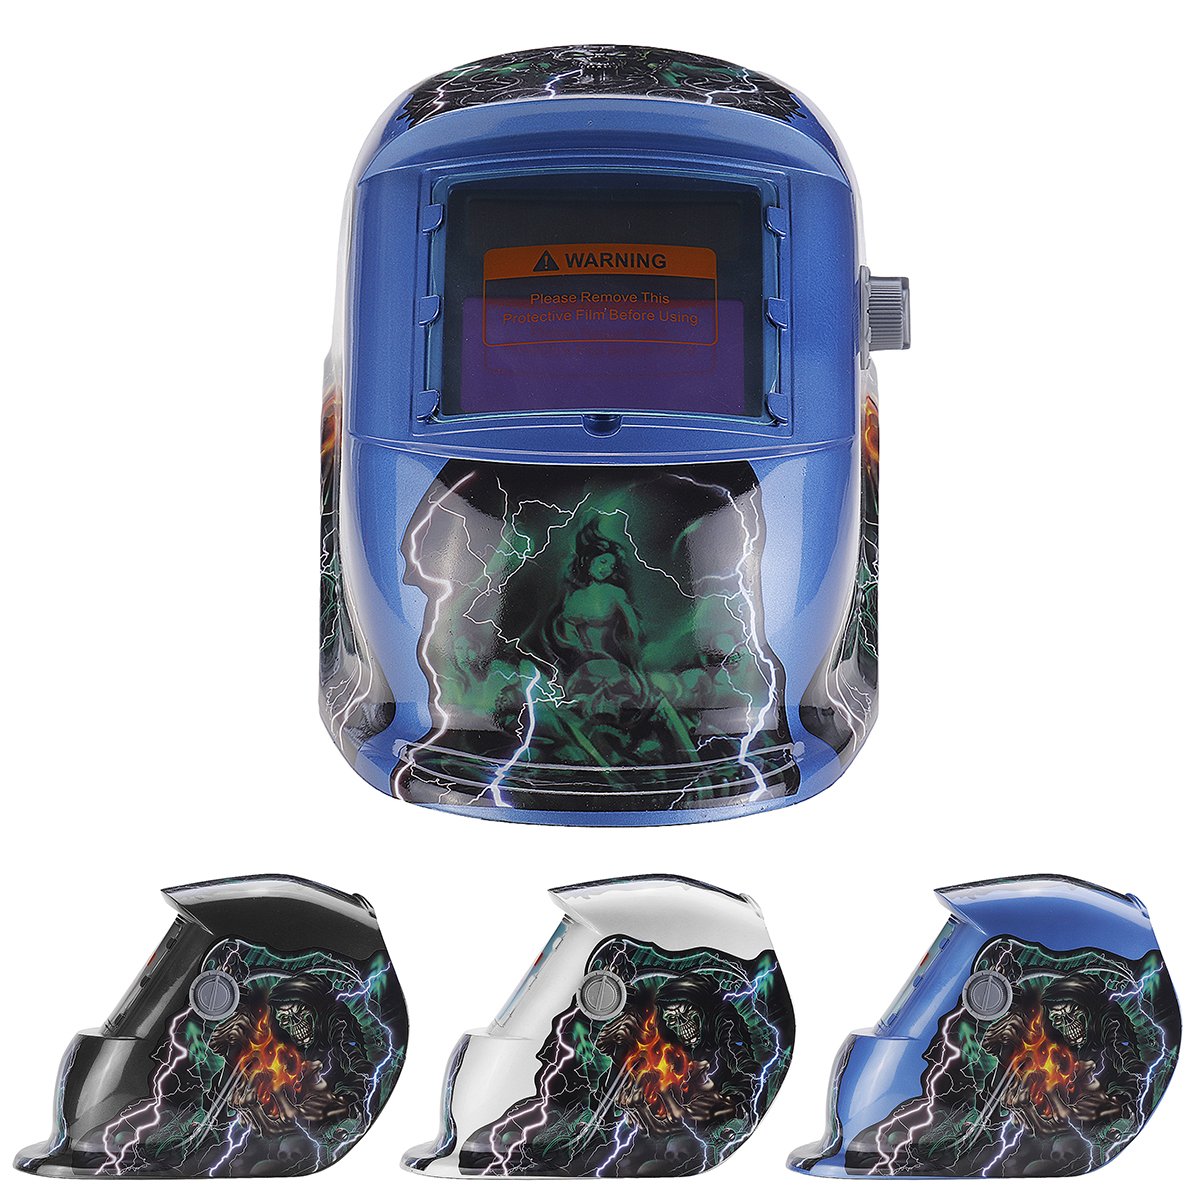 Solar-Controller-Electric-Welding-Helmets-Masks-Welder-Protection-Tools-Welding-Devices-Welding-Helm-1559031-1